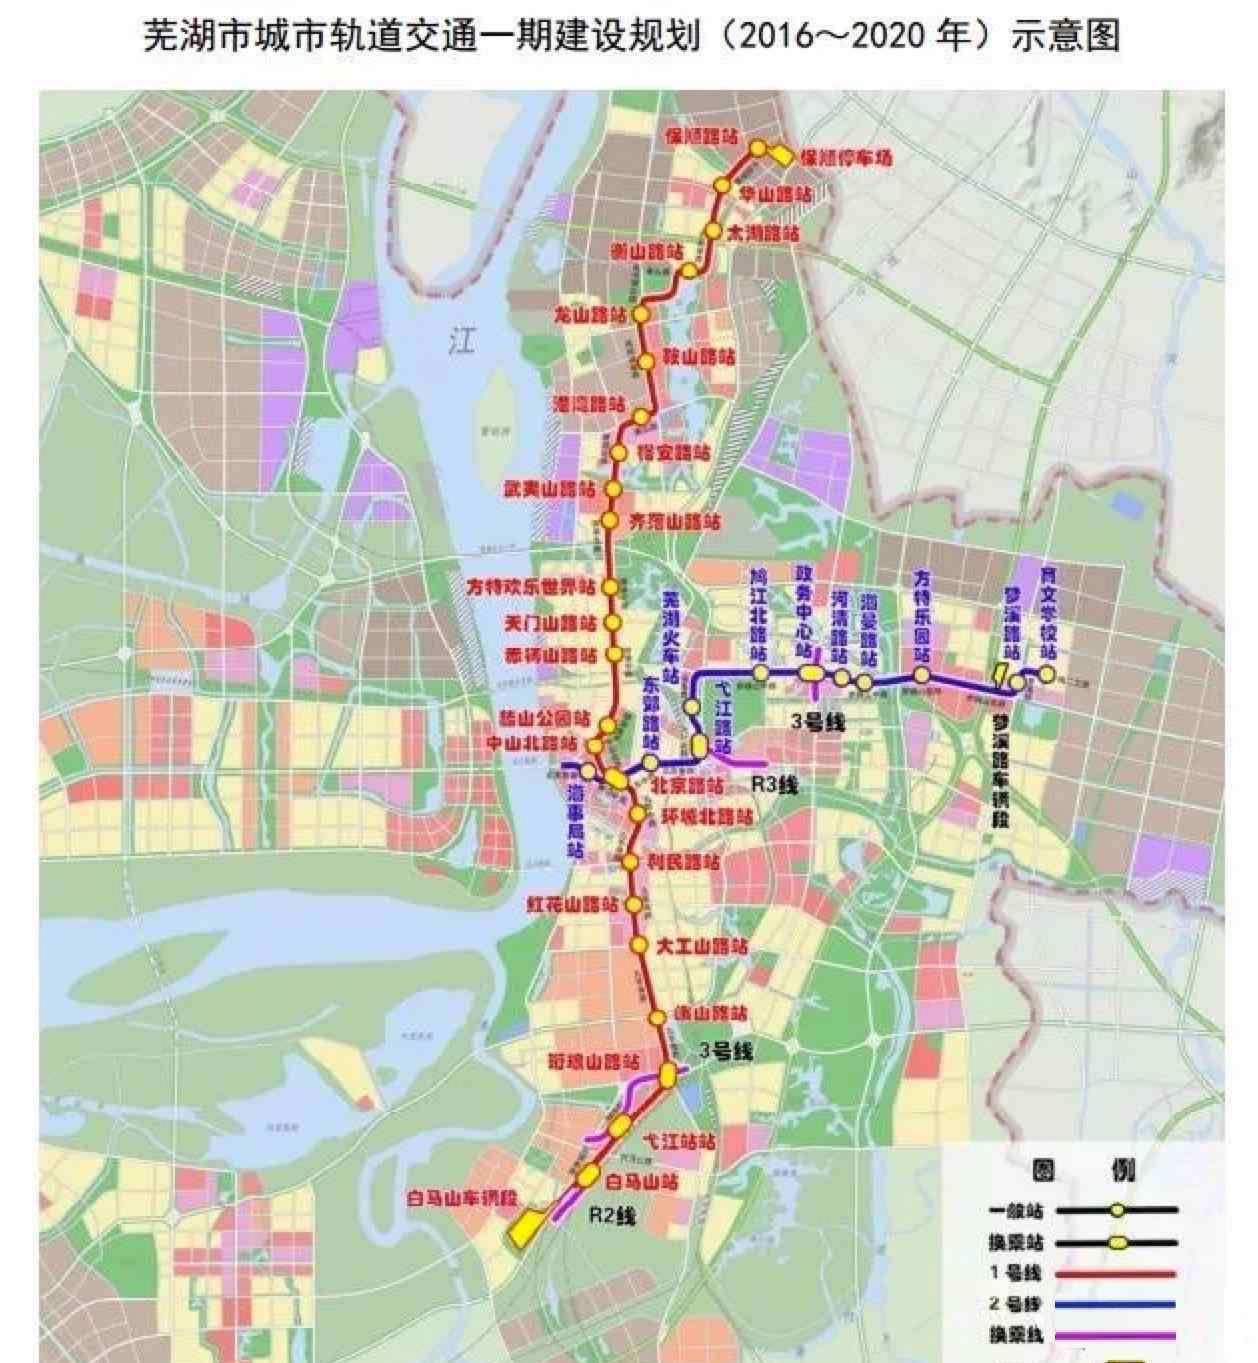 地铁和轻轨的区别 芜湖市轻轨网规划示意图，轻轨和地铁的区别速度谁快？